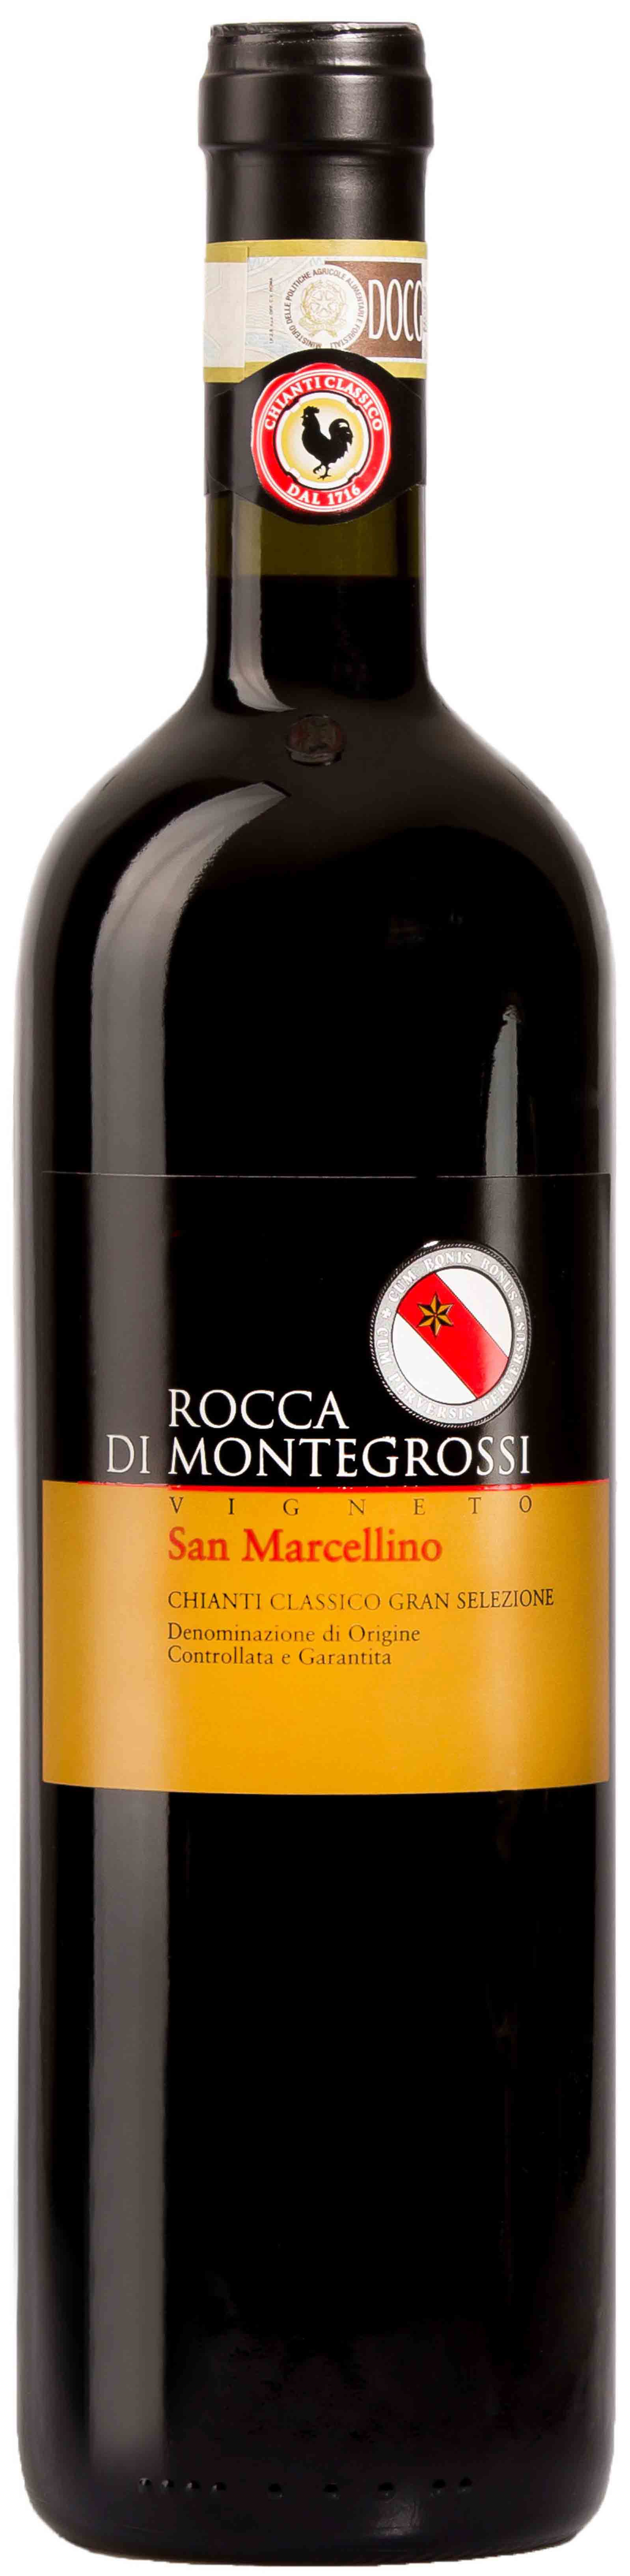 Rocca Di Montegrossi, Vigneto San Marcellino Chianti Classico Gran Selezione, 2008